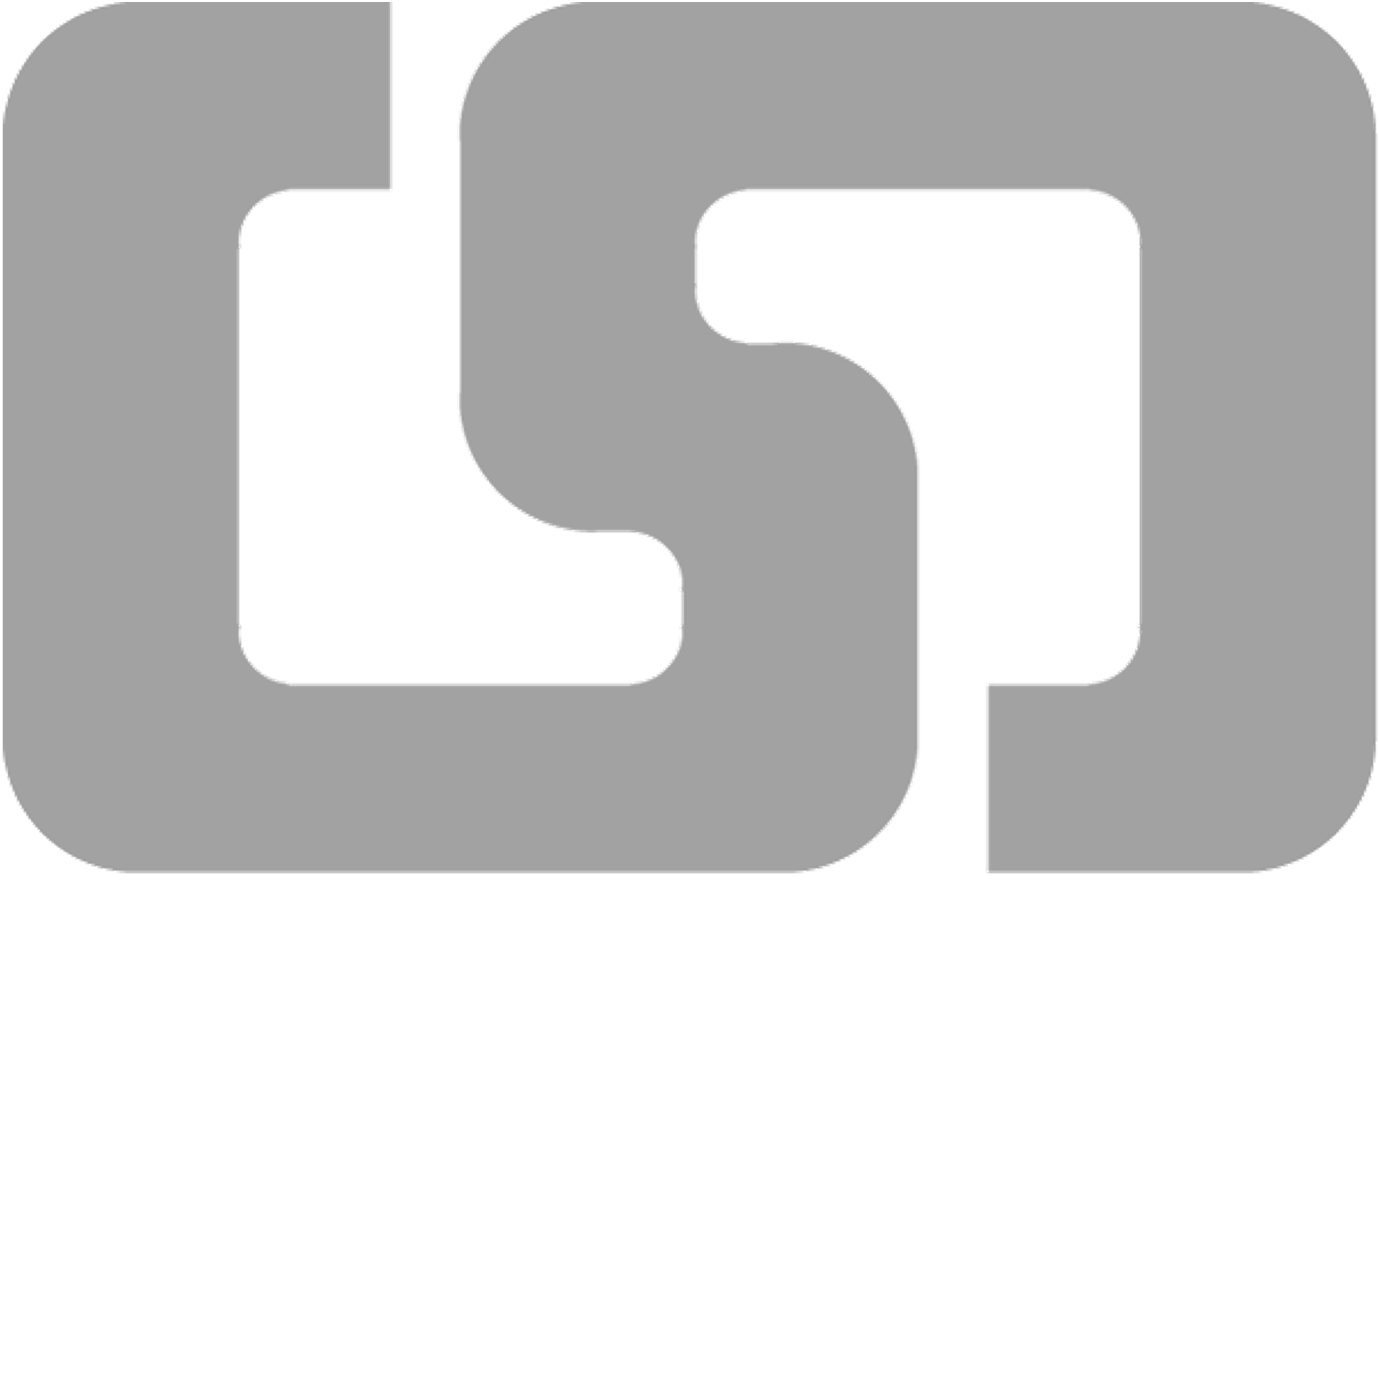 日本セラミックス協会 九州支部